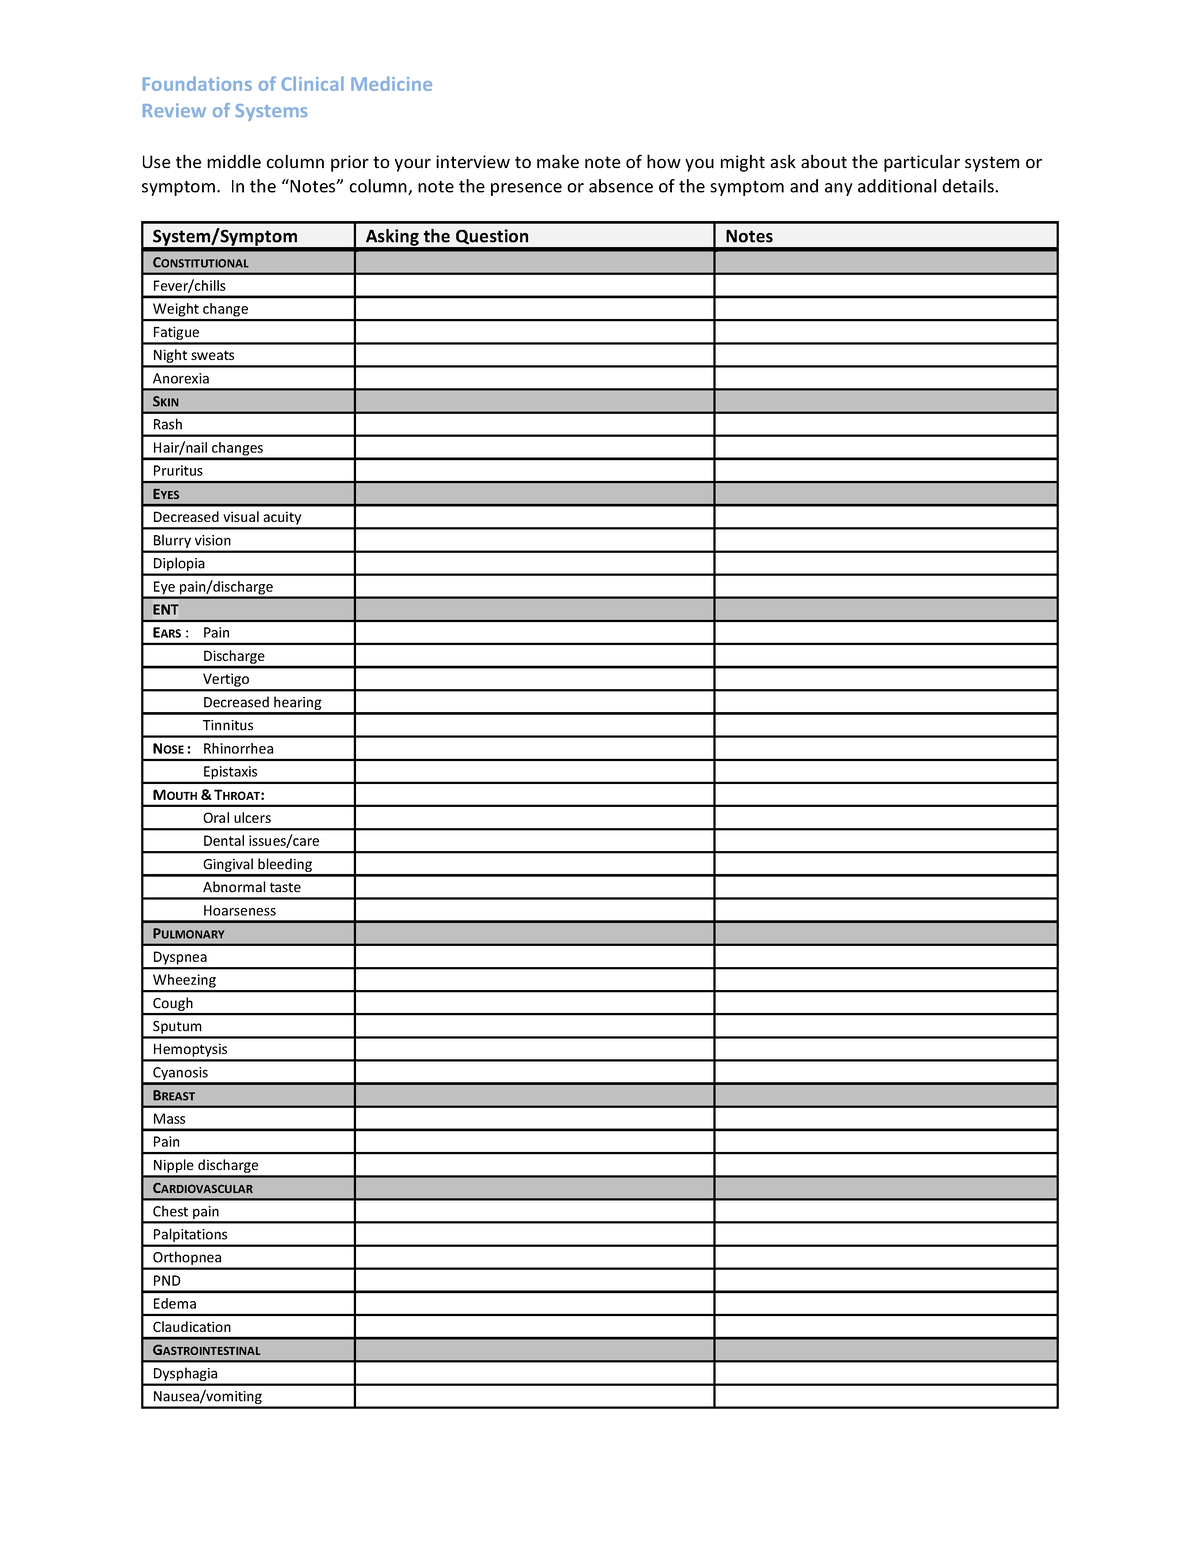 fcm-ros-checklist-sdasdadadadadgfdbhfd-foundations-of-clinical